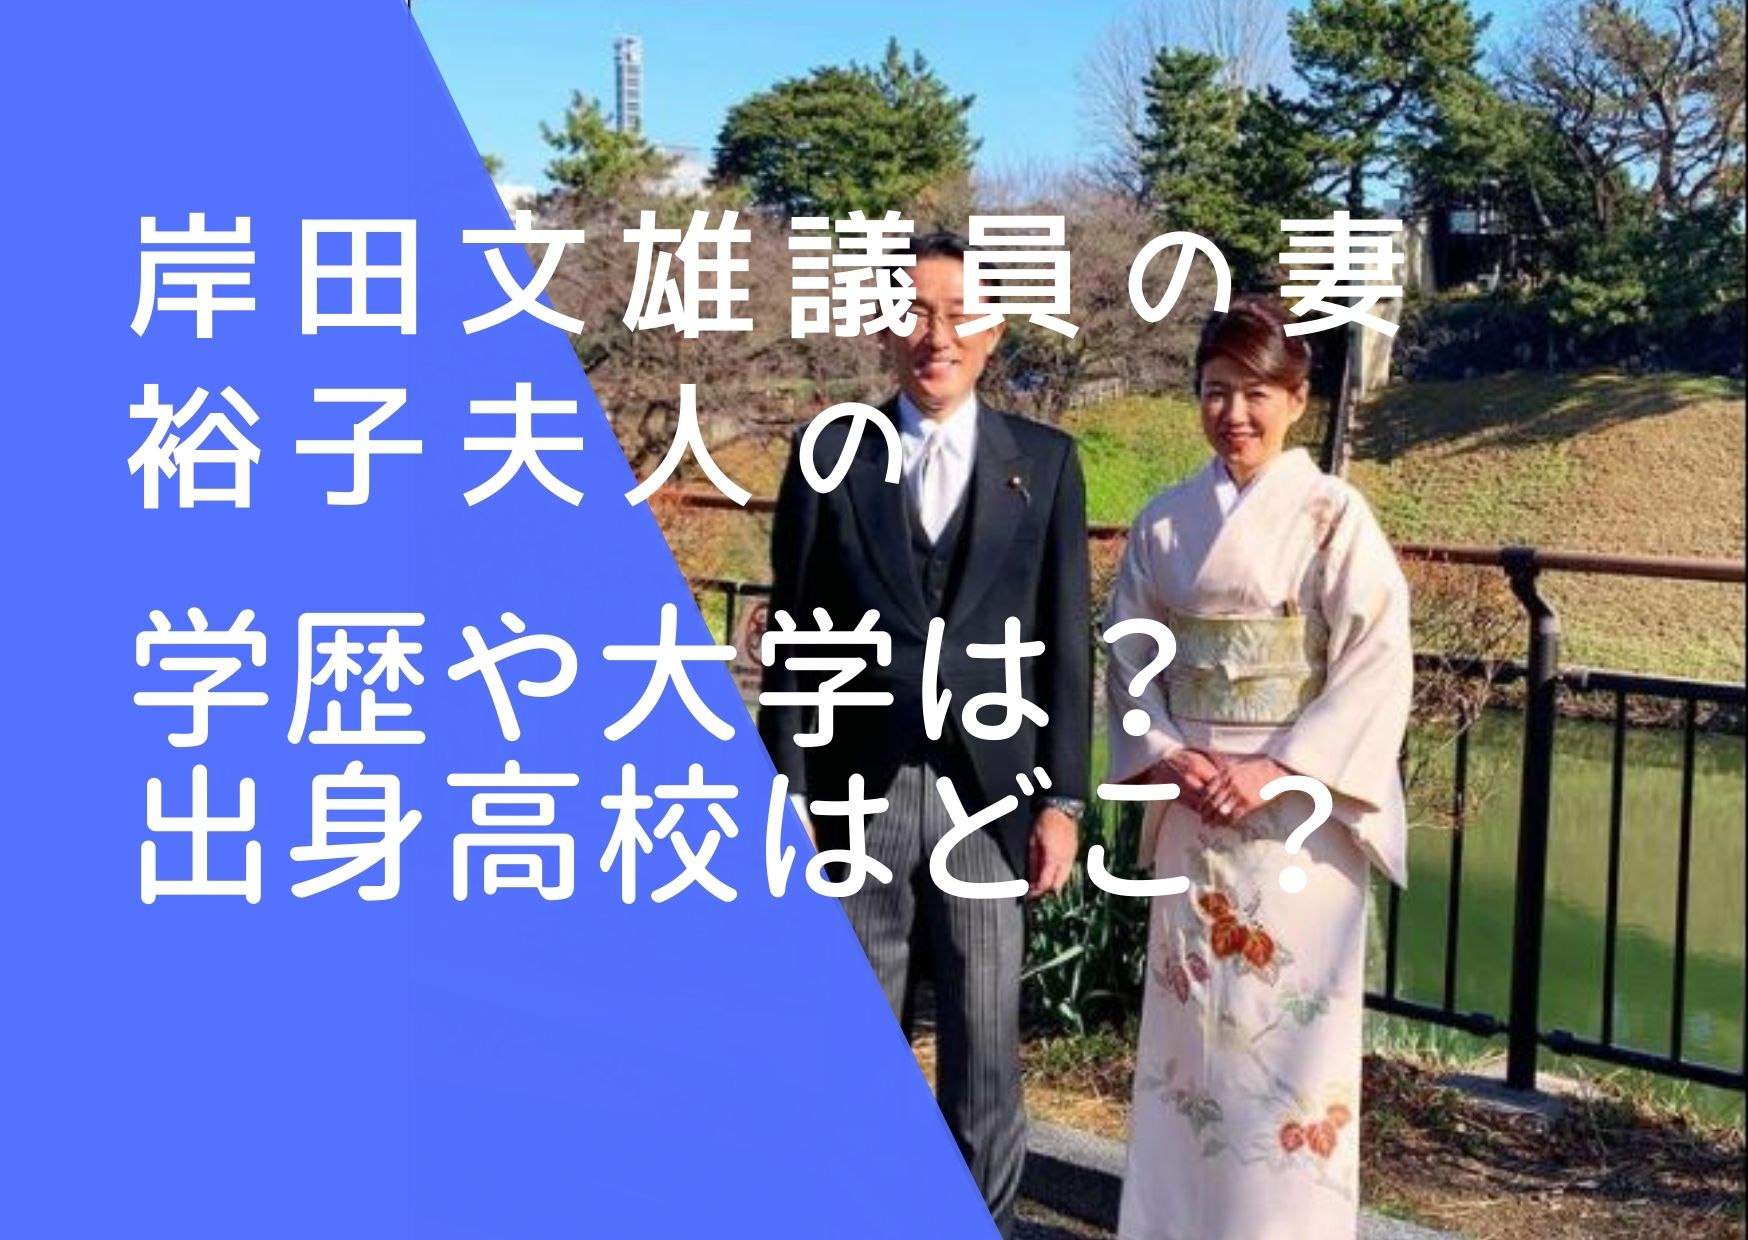 岸田文雄議員と妻・裕子夫人の画像